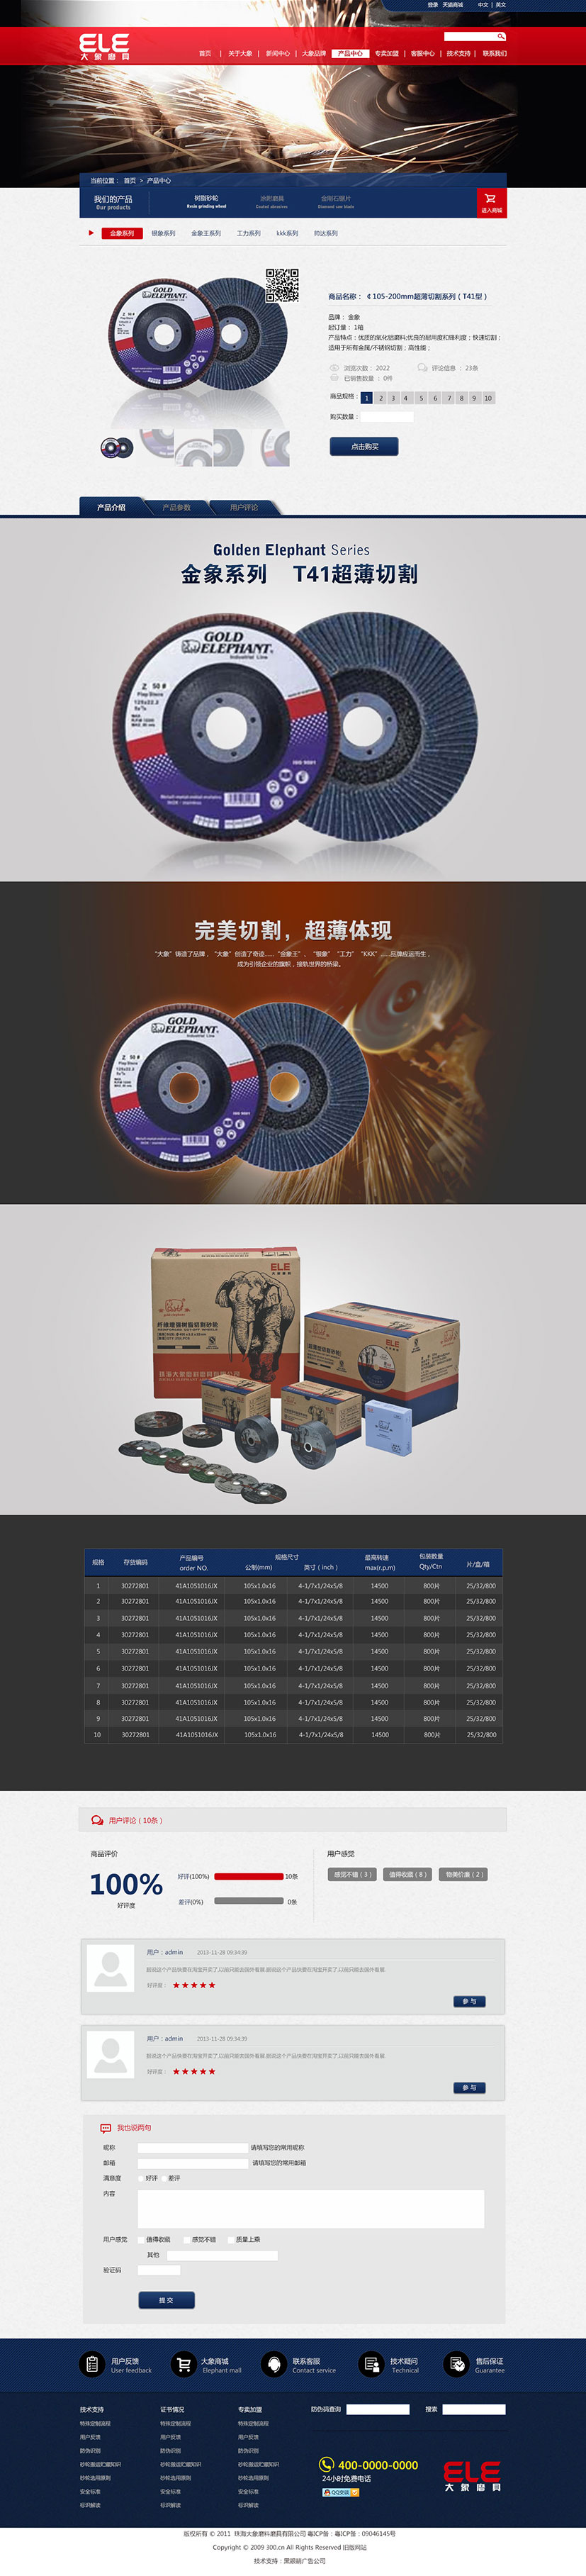 黑眼睛广告为珠海大象磨料磨具有限公司设计的中文官网产品终极页